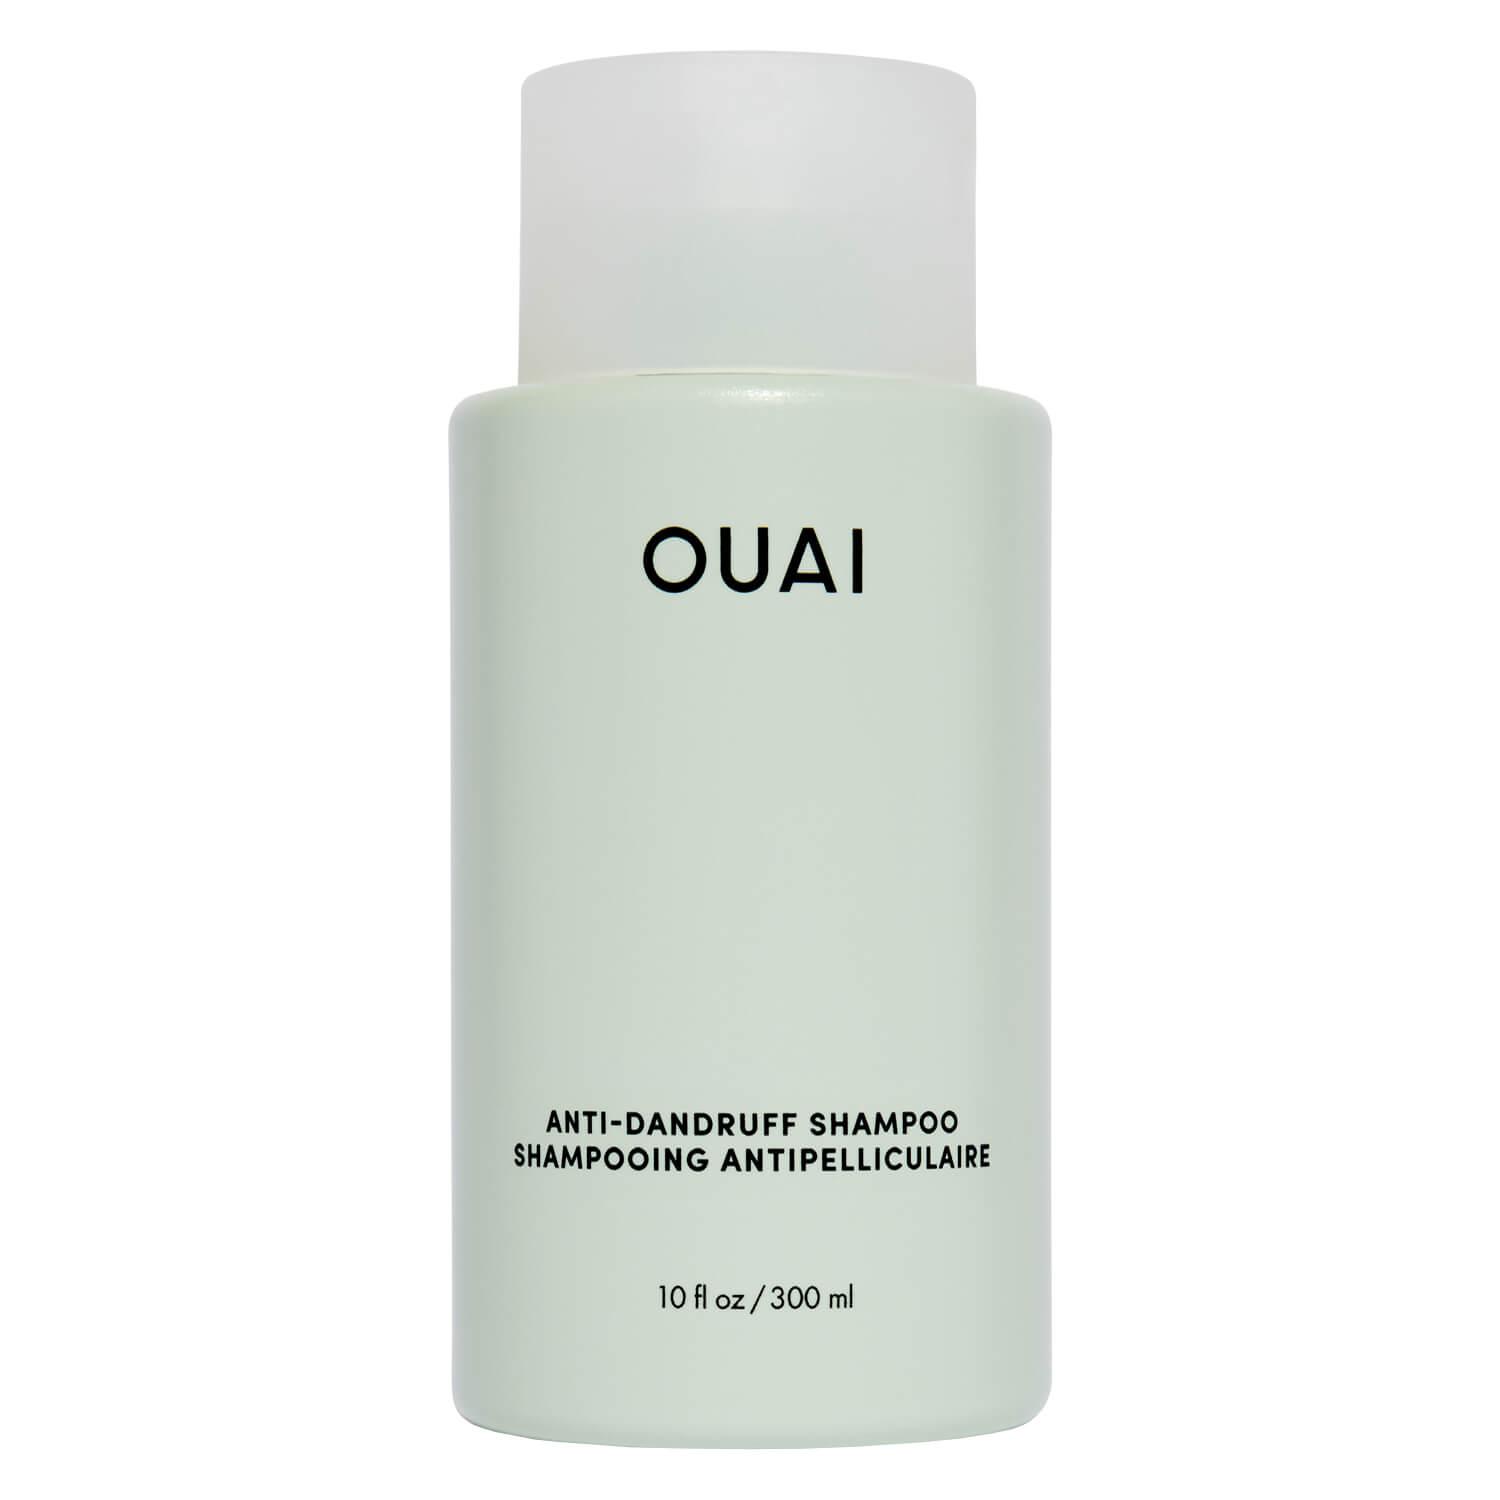 OUAI - Anti-Dandruff Shampoo